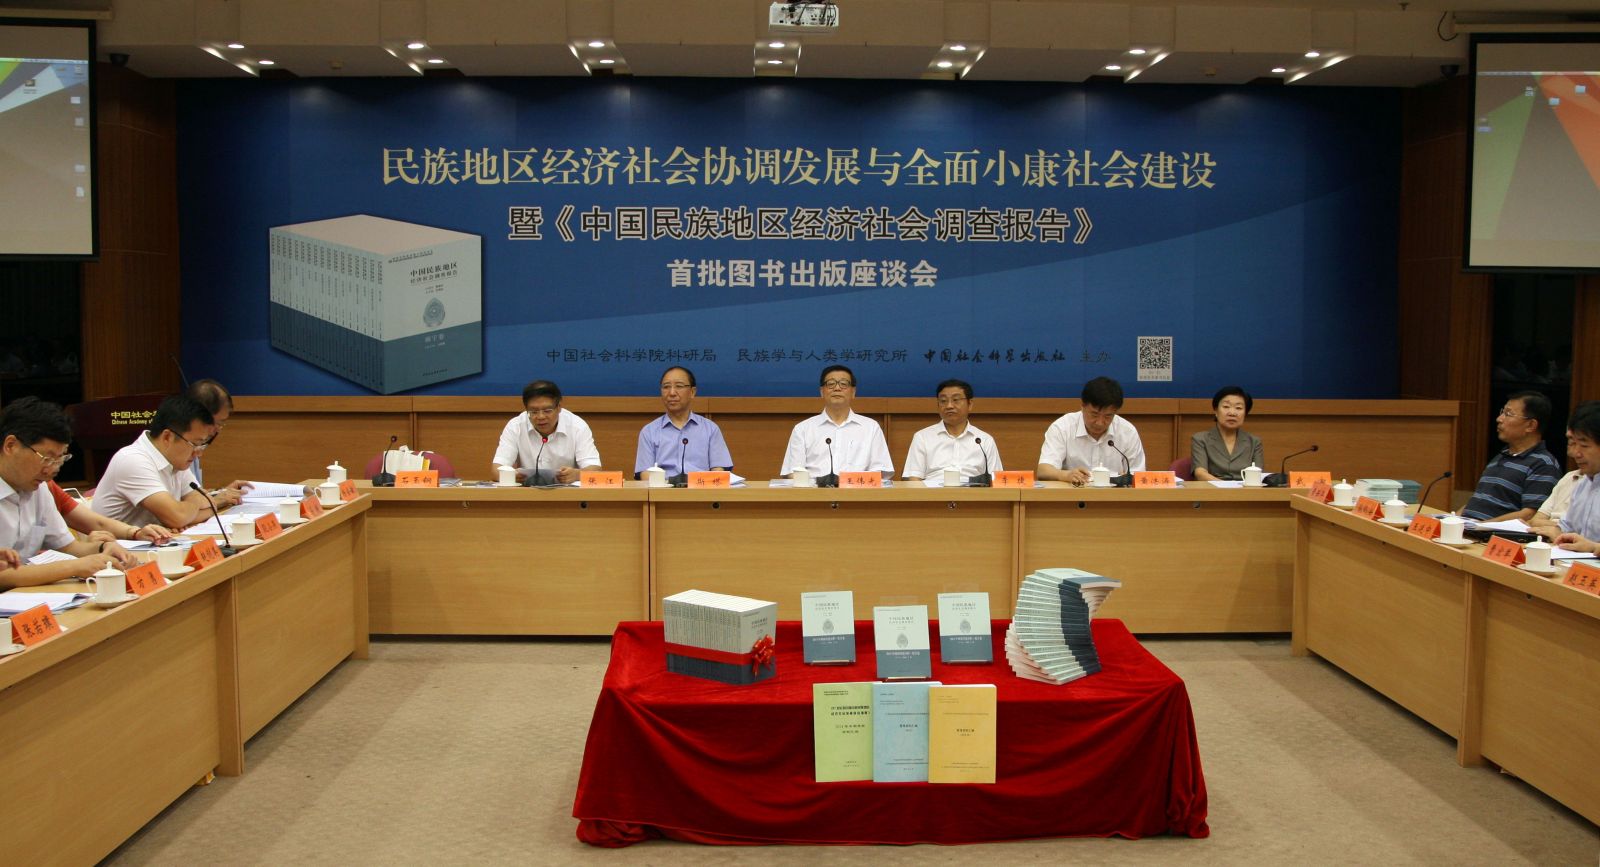 《中国民族地区经济社会调查报告》首批图书出版座谈会，程明摄